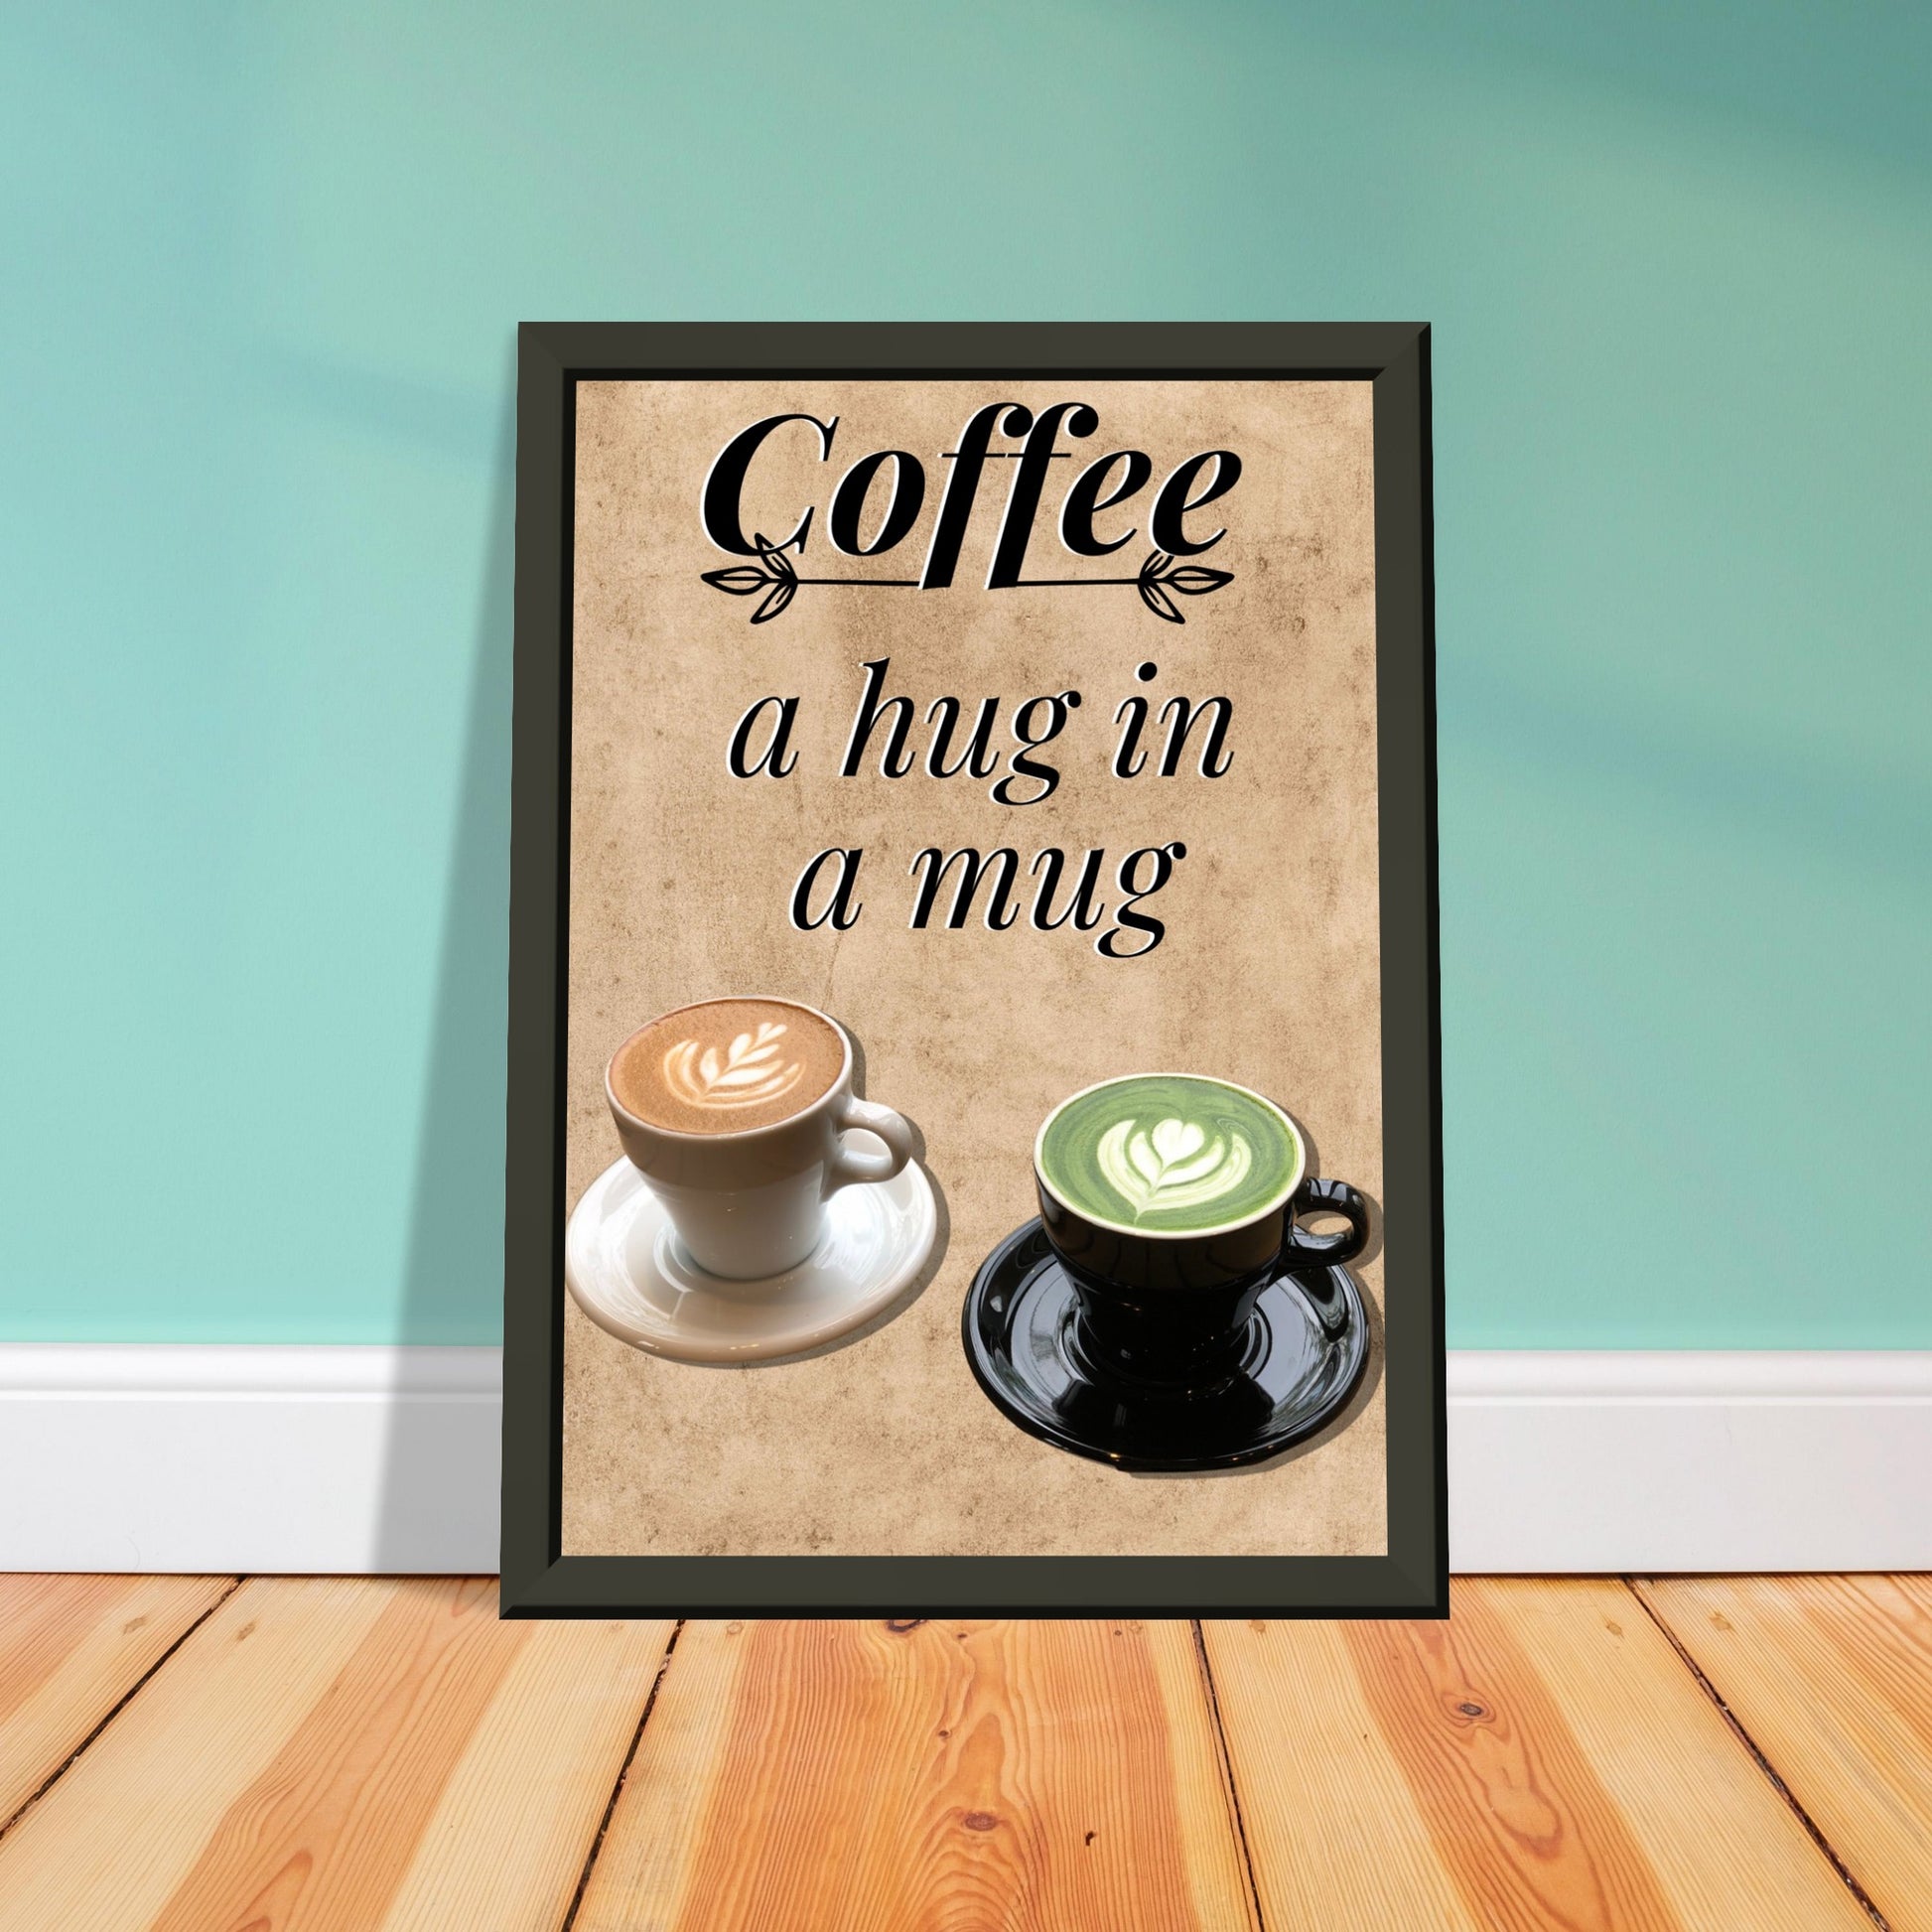 Eingerahmtes Bild mit der Überschrift: "Coffee" und dem Titel: "a hug in a mug" mit zwei Tassen Kaffee auf einem Beigen Hintergrund an einer Blauen Wand gelehnt